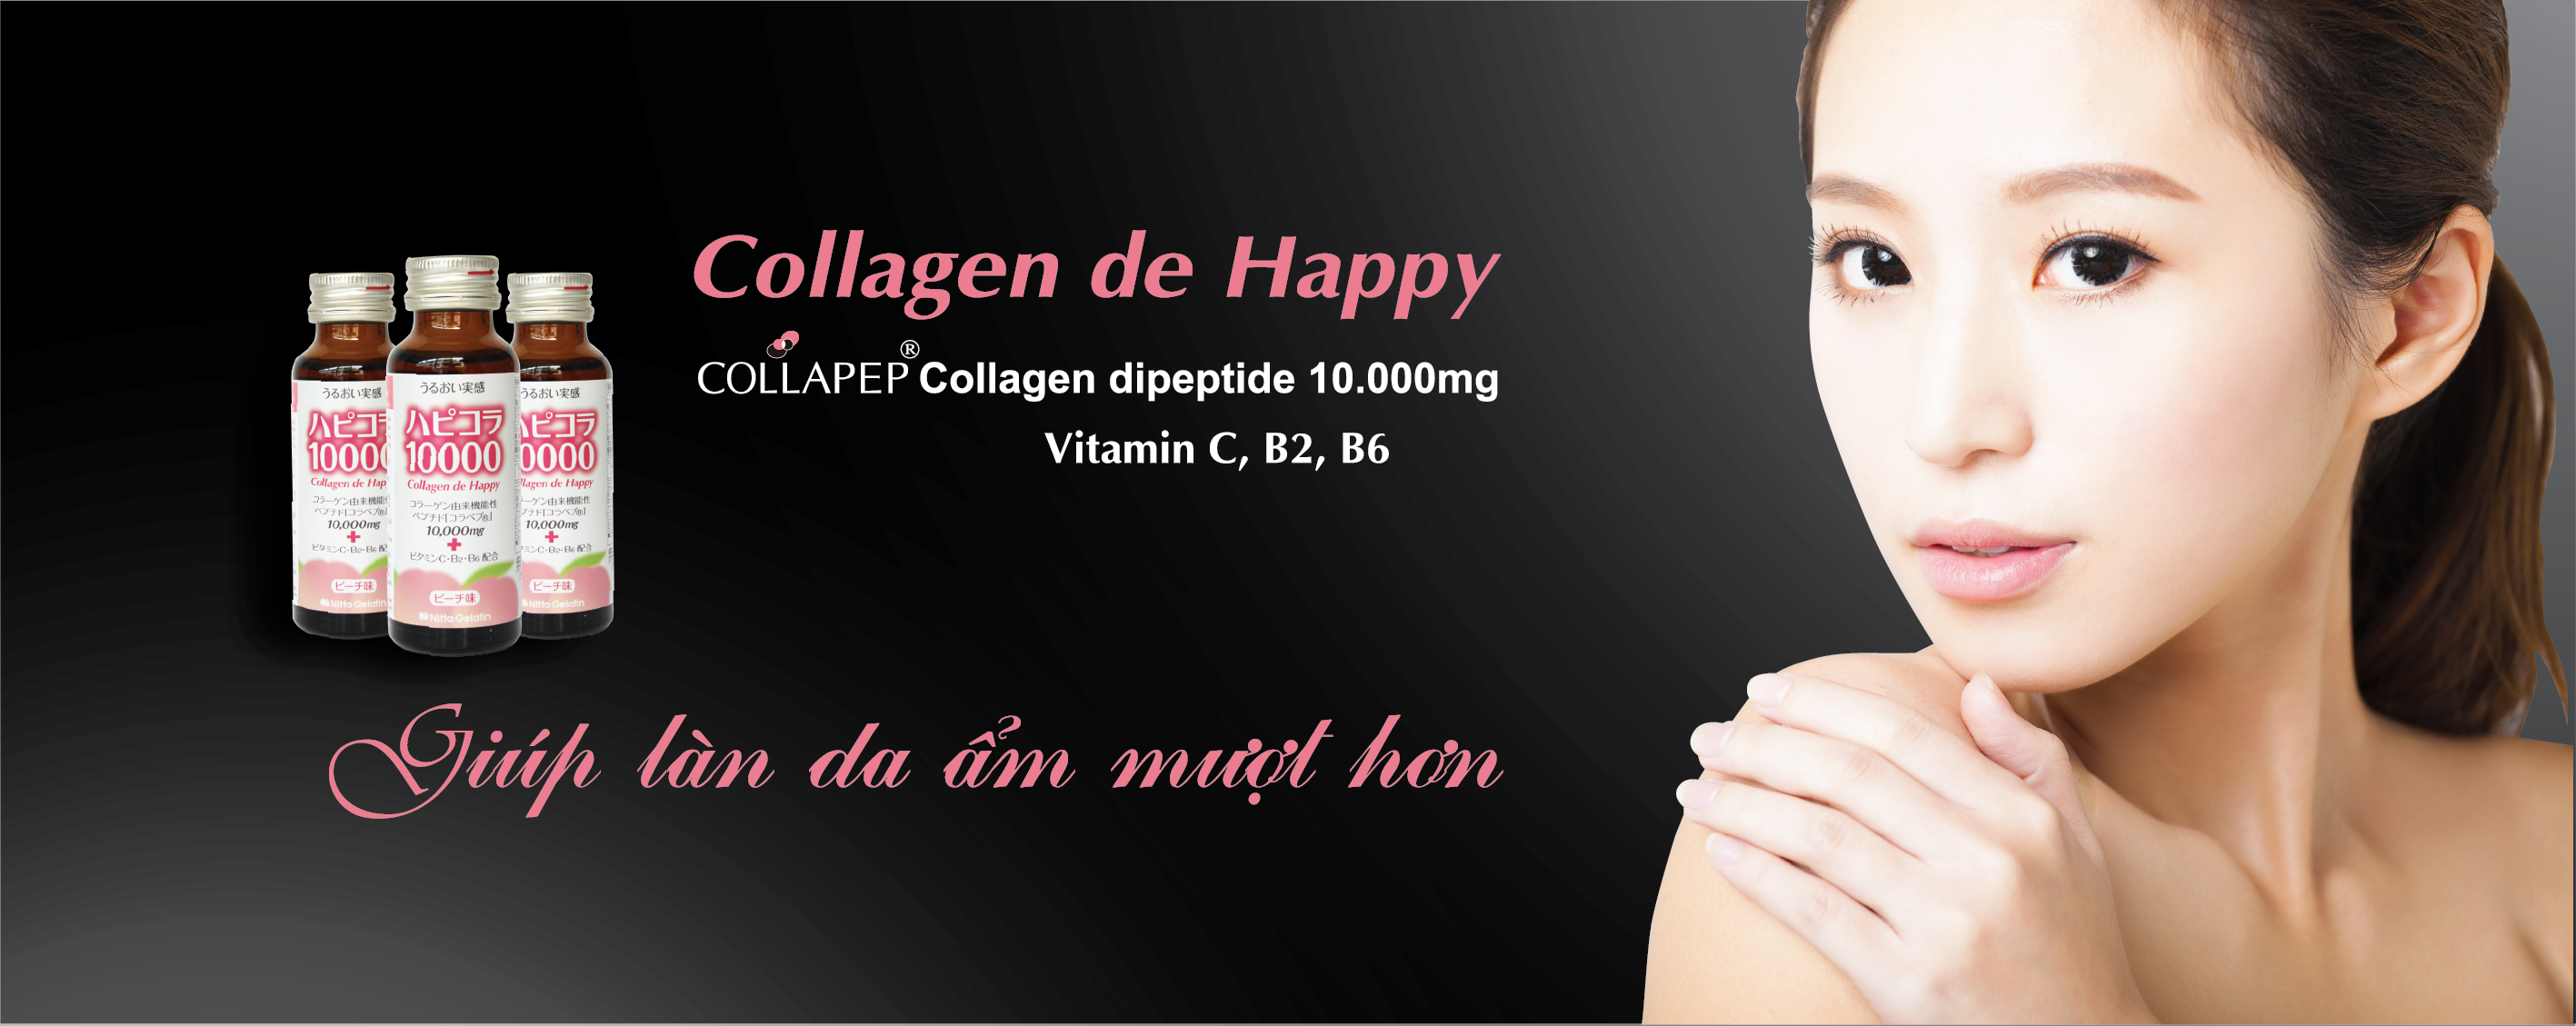 Collagen de happy